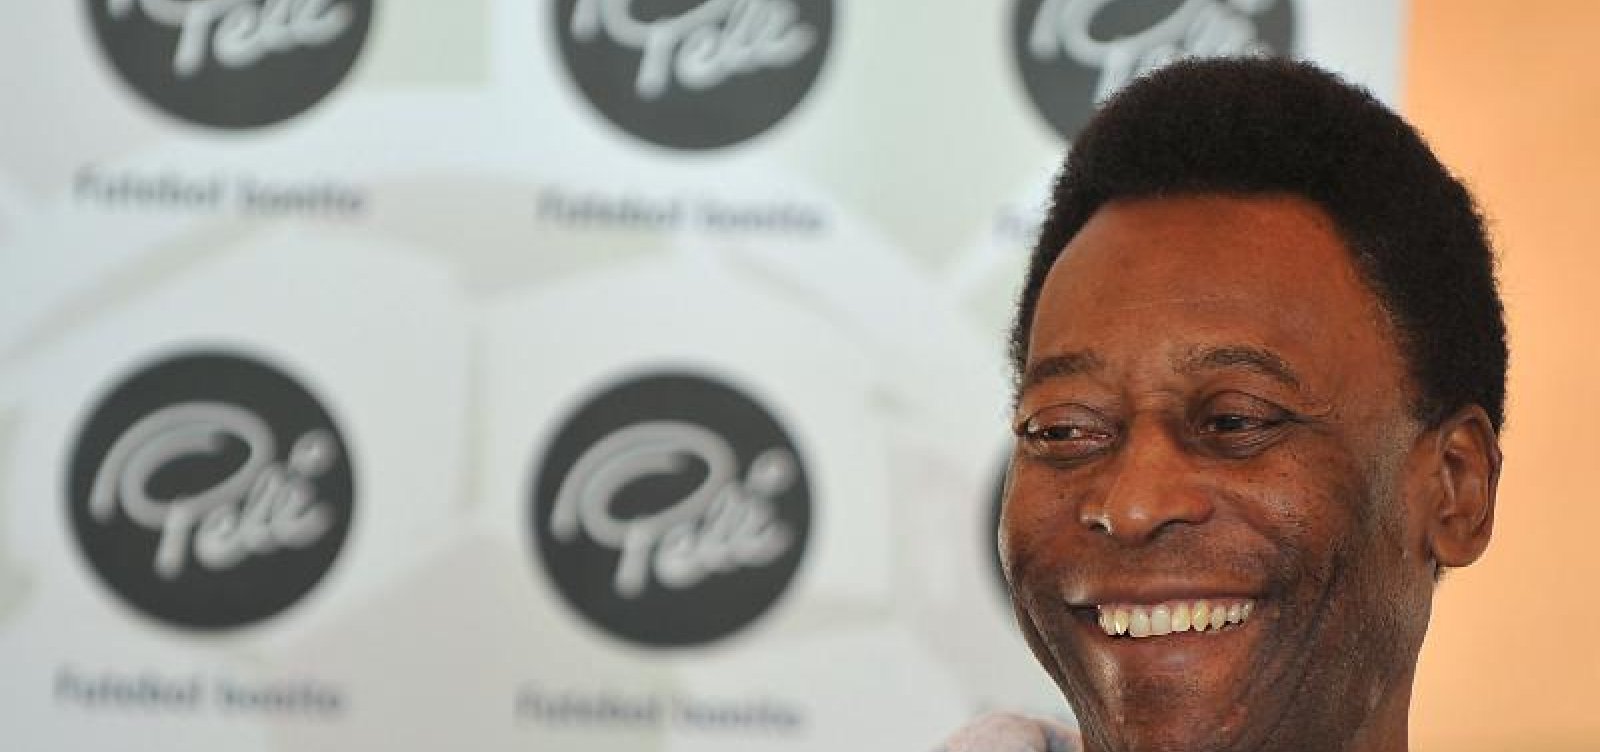 Médicos retiram cálculo renal e Pelé tem bom estado clínico